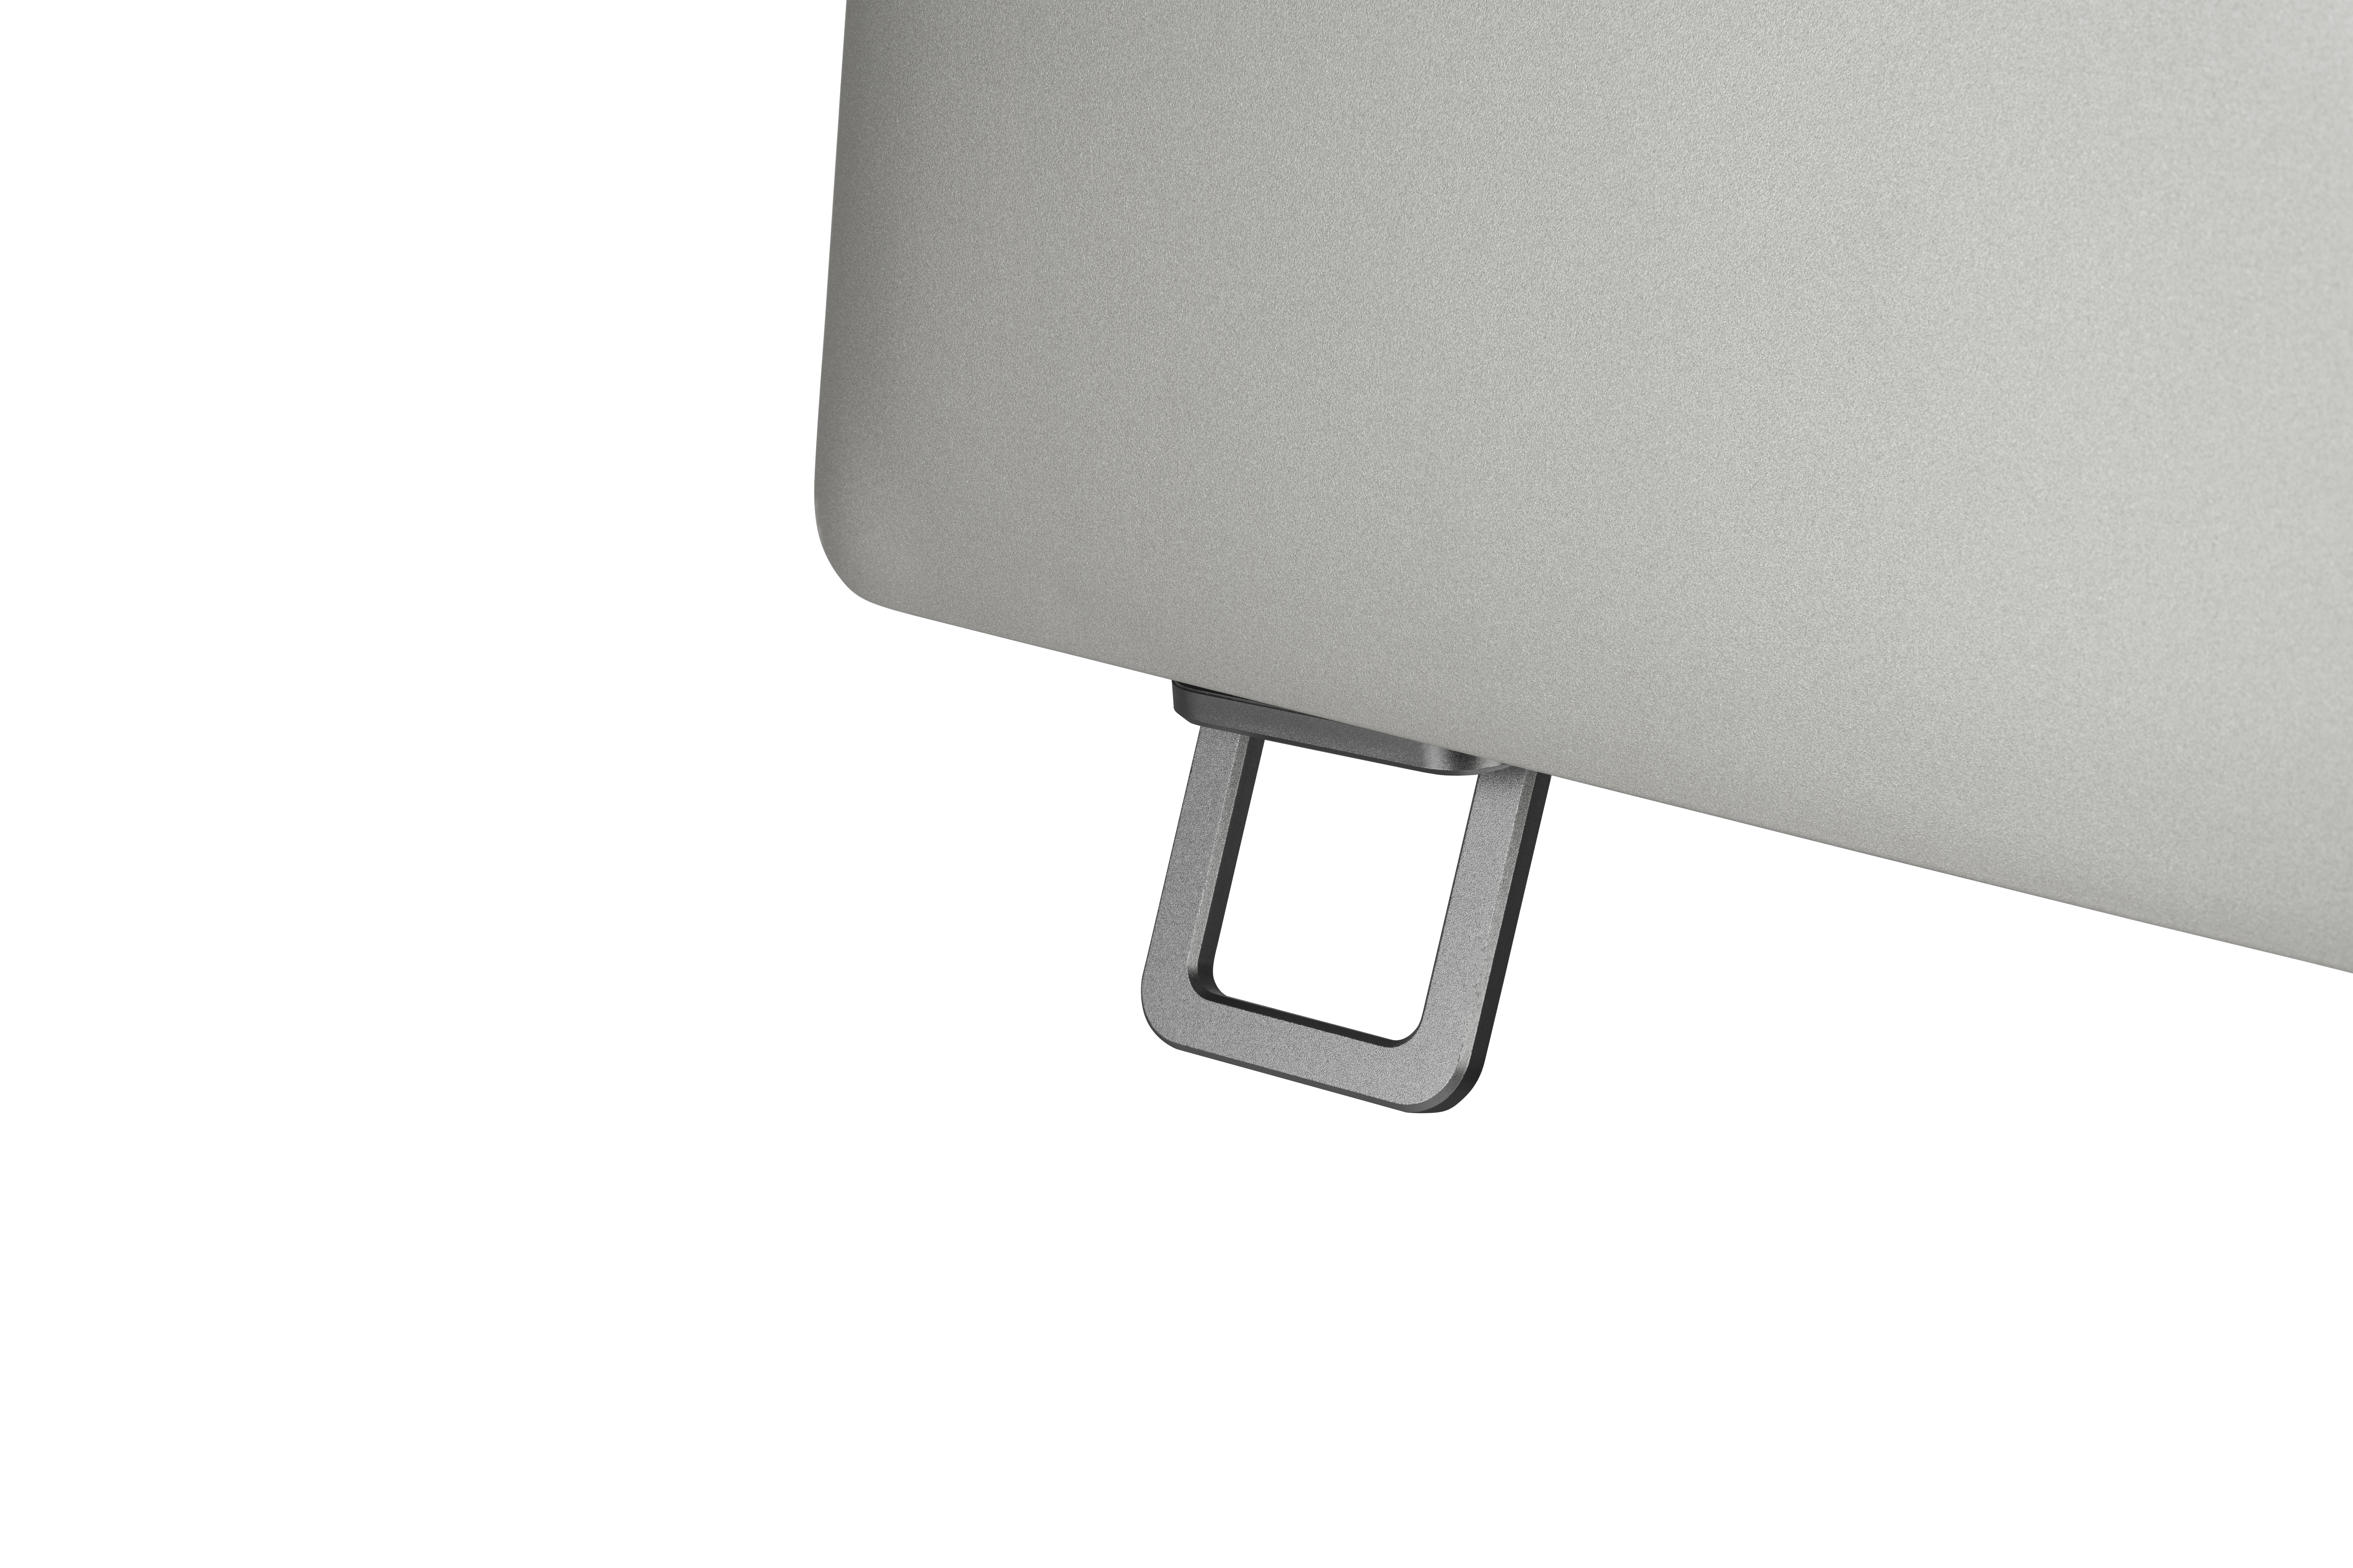 Tucano Laptop mini Stand - Aluminiumfüsschen zum Einklappen - Space Grey (Grau)